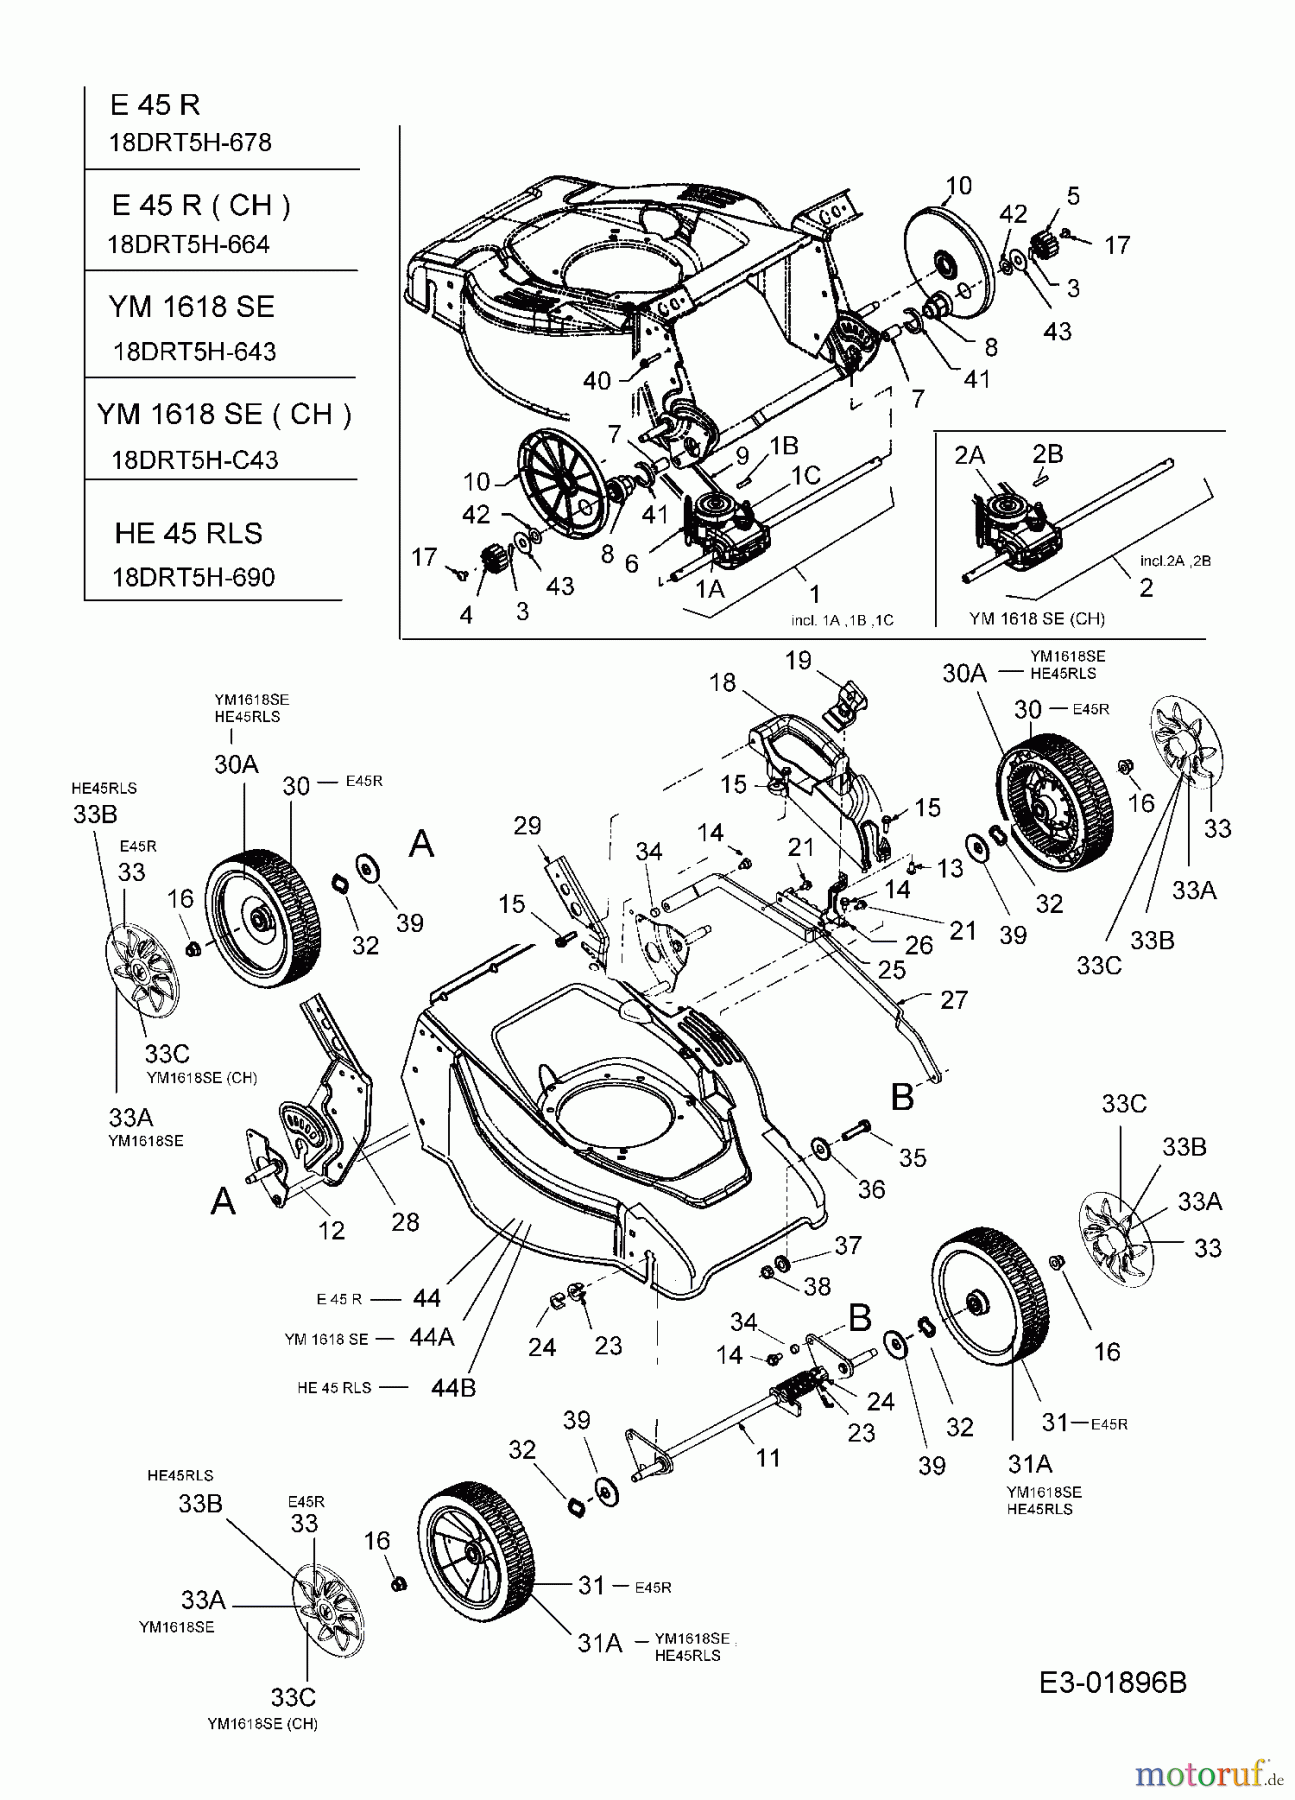  MTD Elektromäher mit Antrieb E 45 R 18DRT5H-664  (2005) Getriebe, Räder, Schnitthöhenverstellung